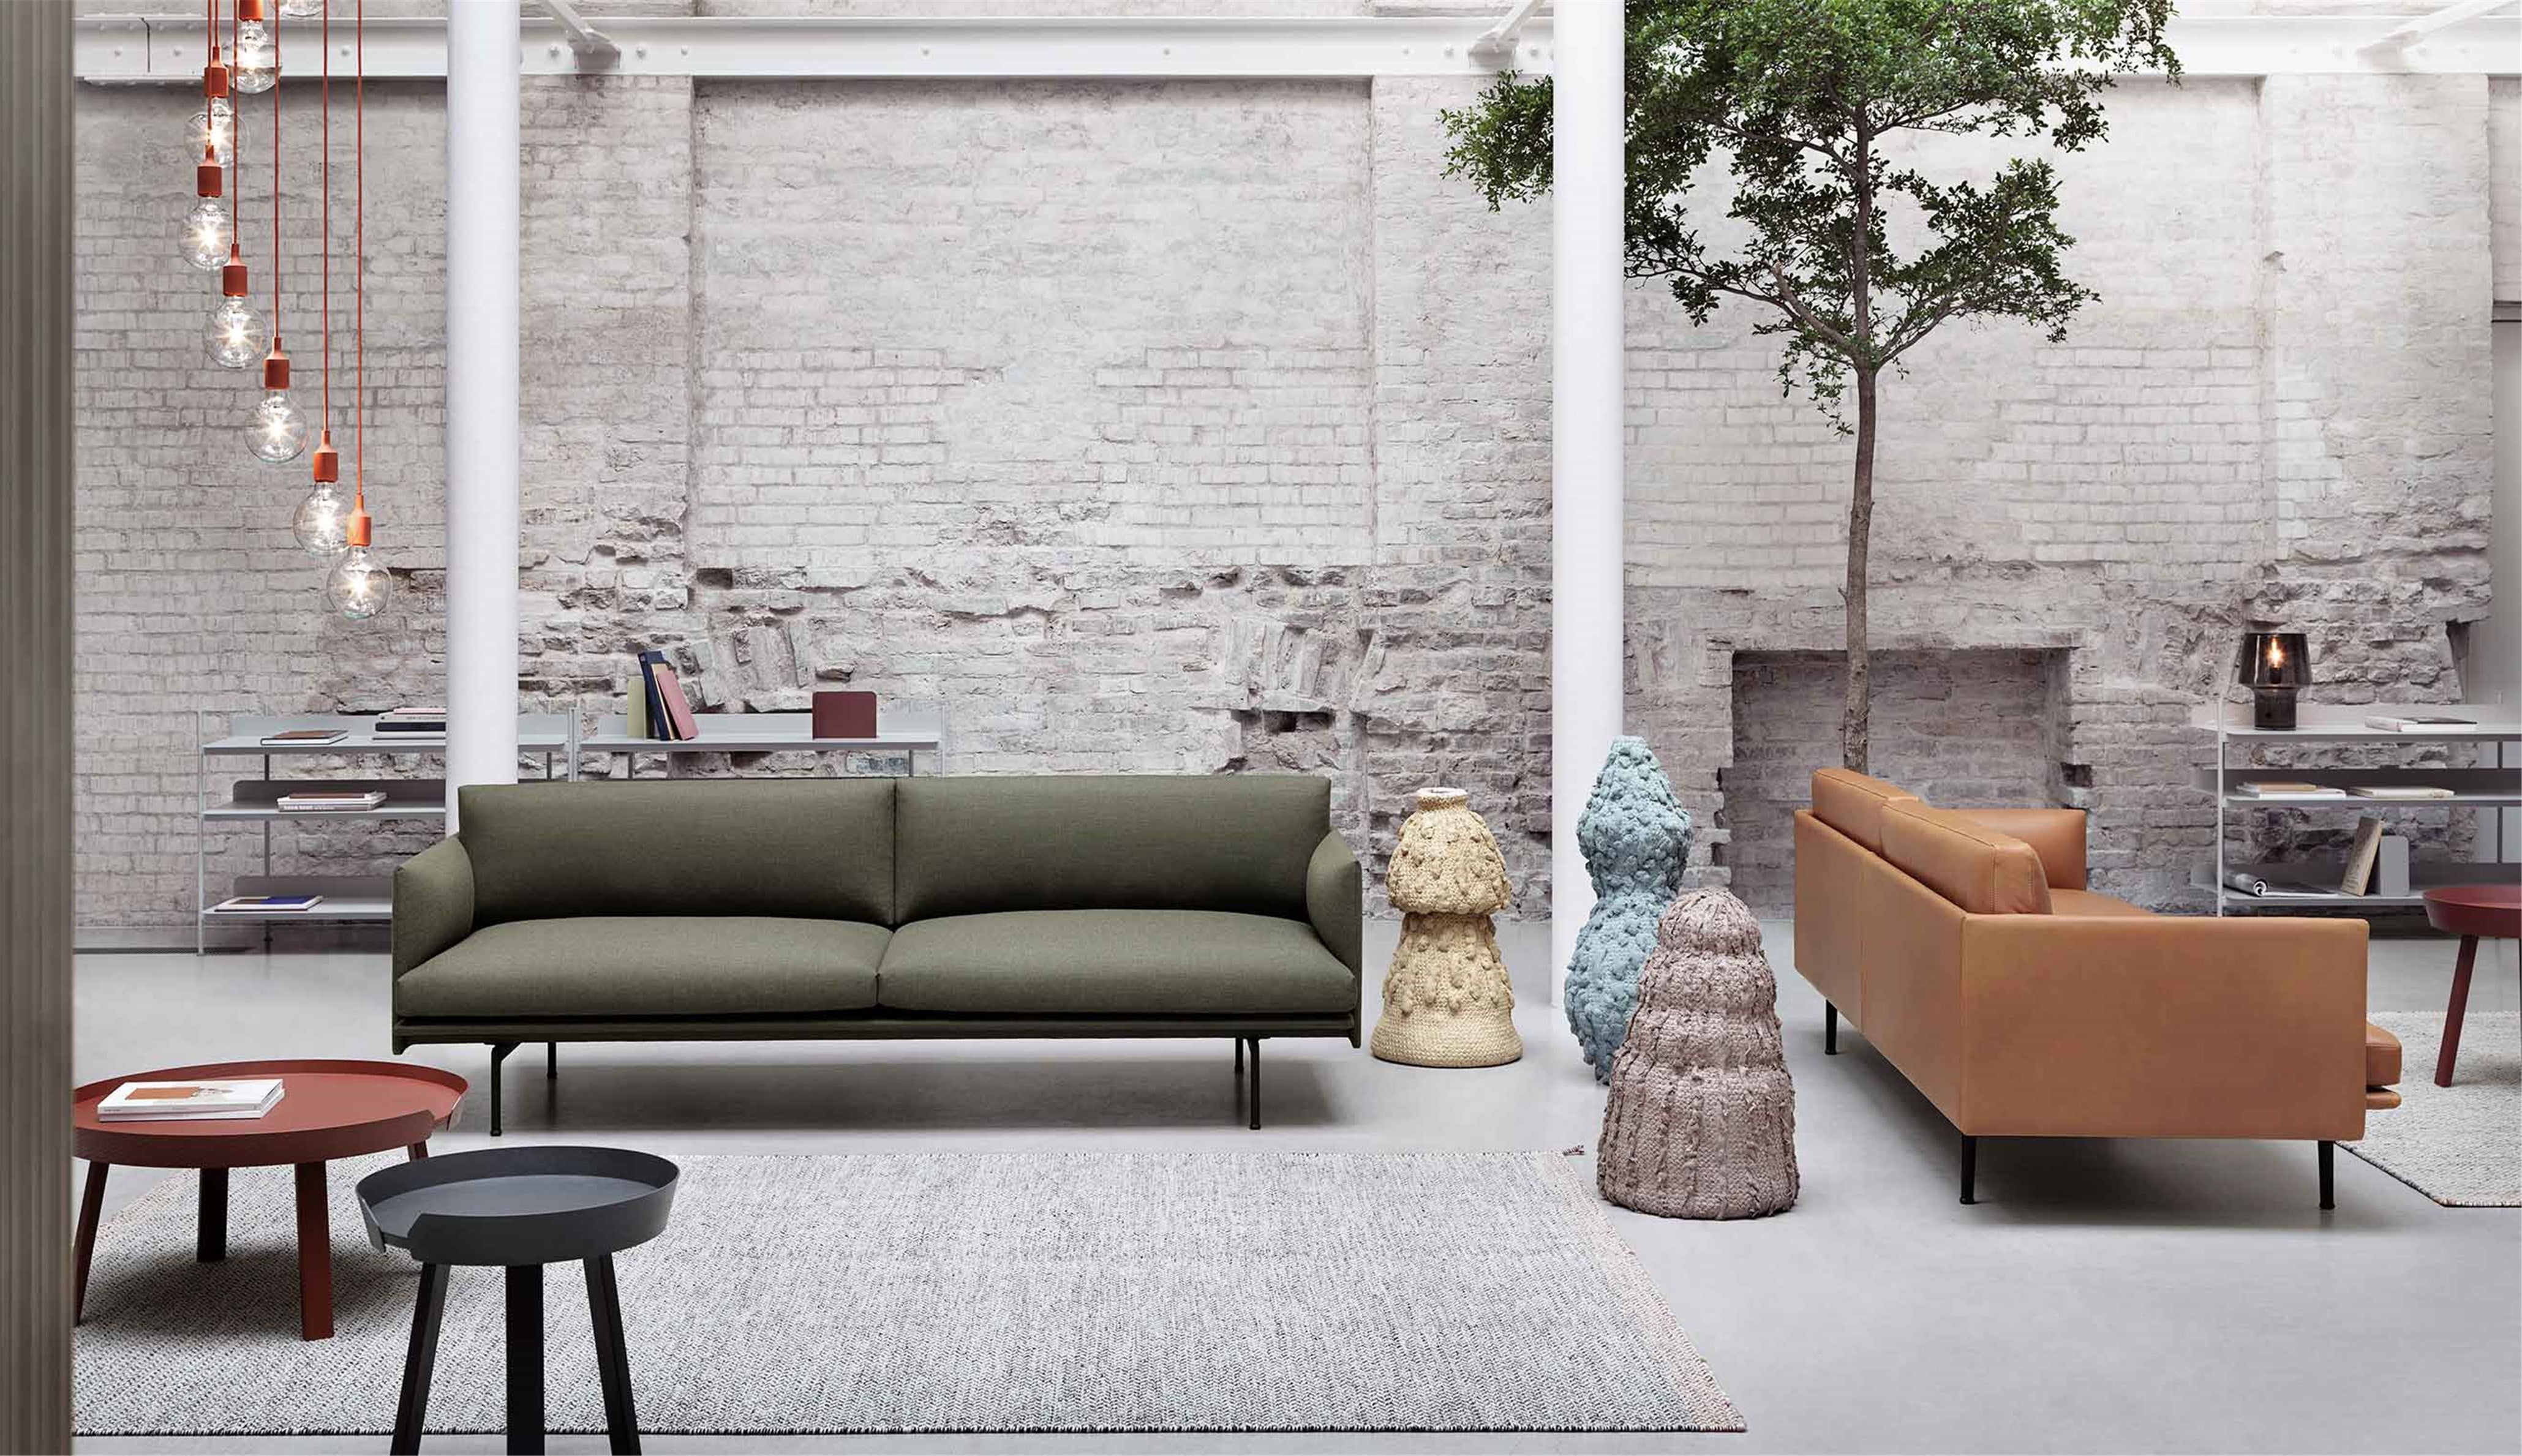 Outline 3 1/2 Sofa in Grün / Schwarz präsentiert im Onlineshop von KAQTU Design AG. 4er Sofa ist von Muuto